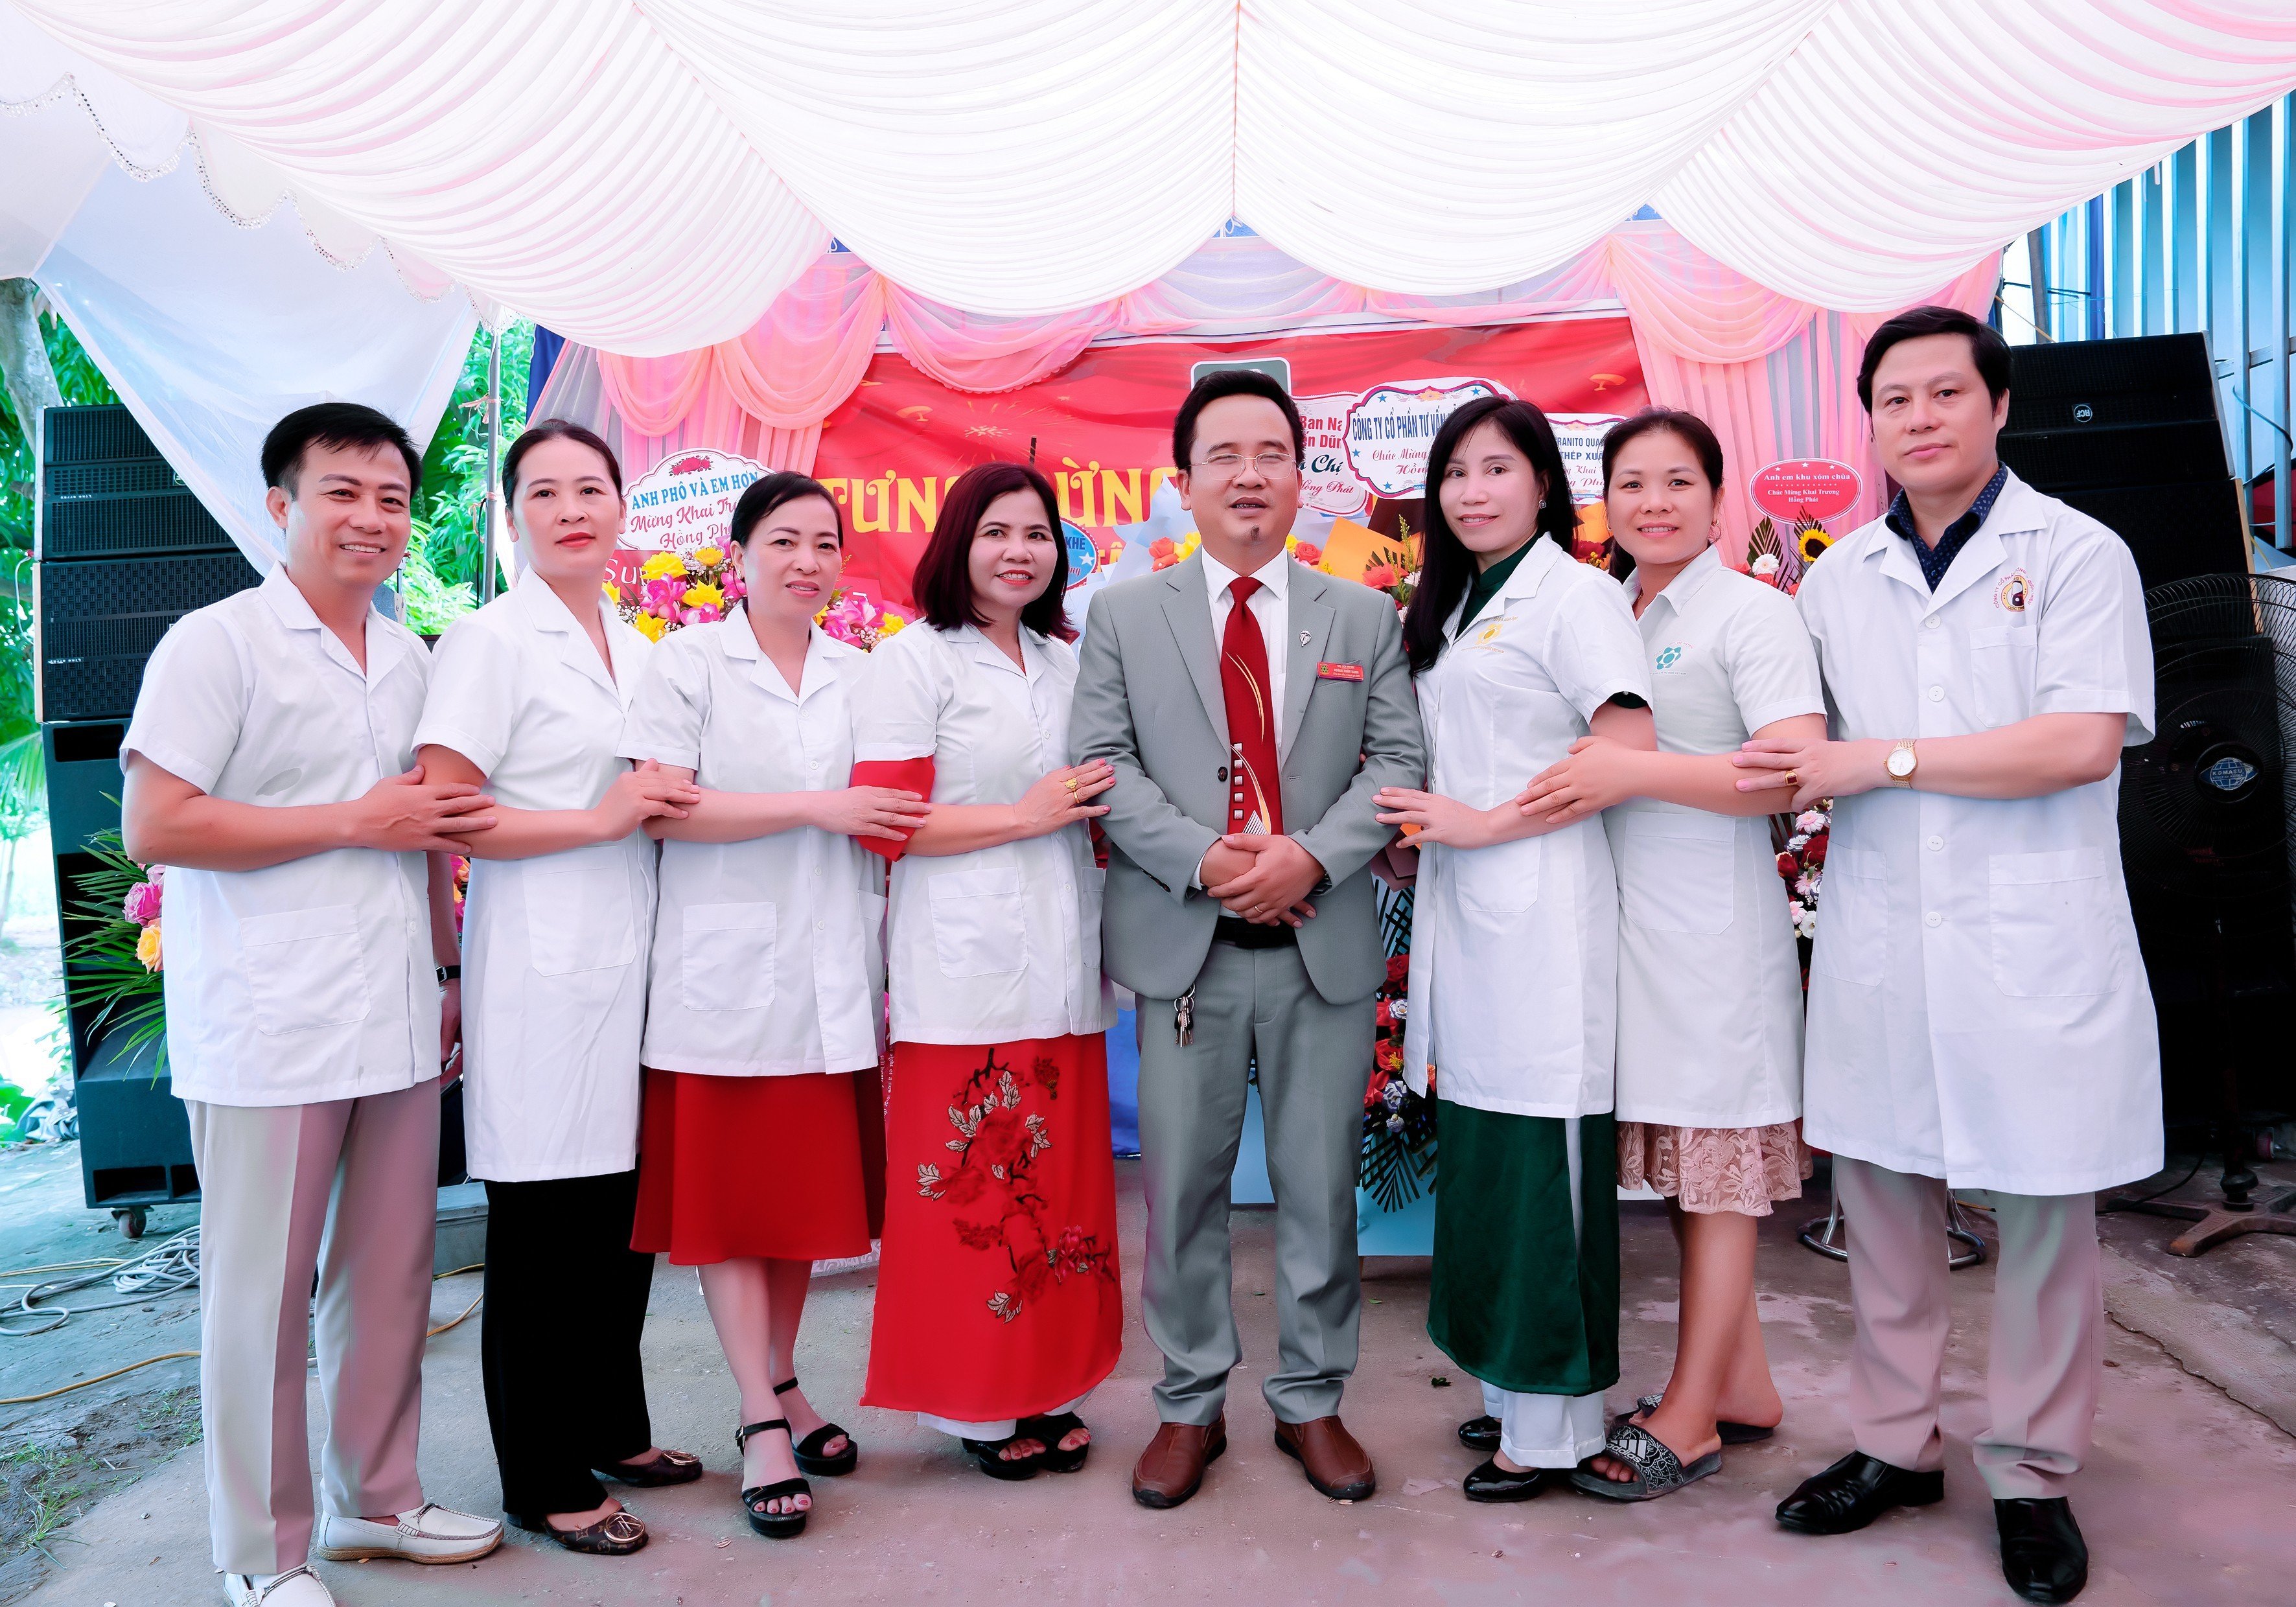 Khai trương Trung tâm chăm sóc sức khỏe Tâm Đức An - Chi nhánh DDS A27 ở Quỳnh Phụ, Thái Bình 